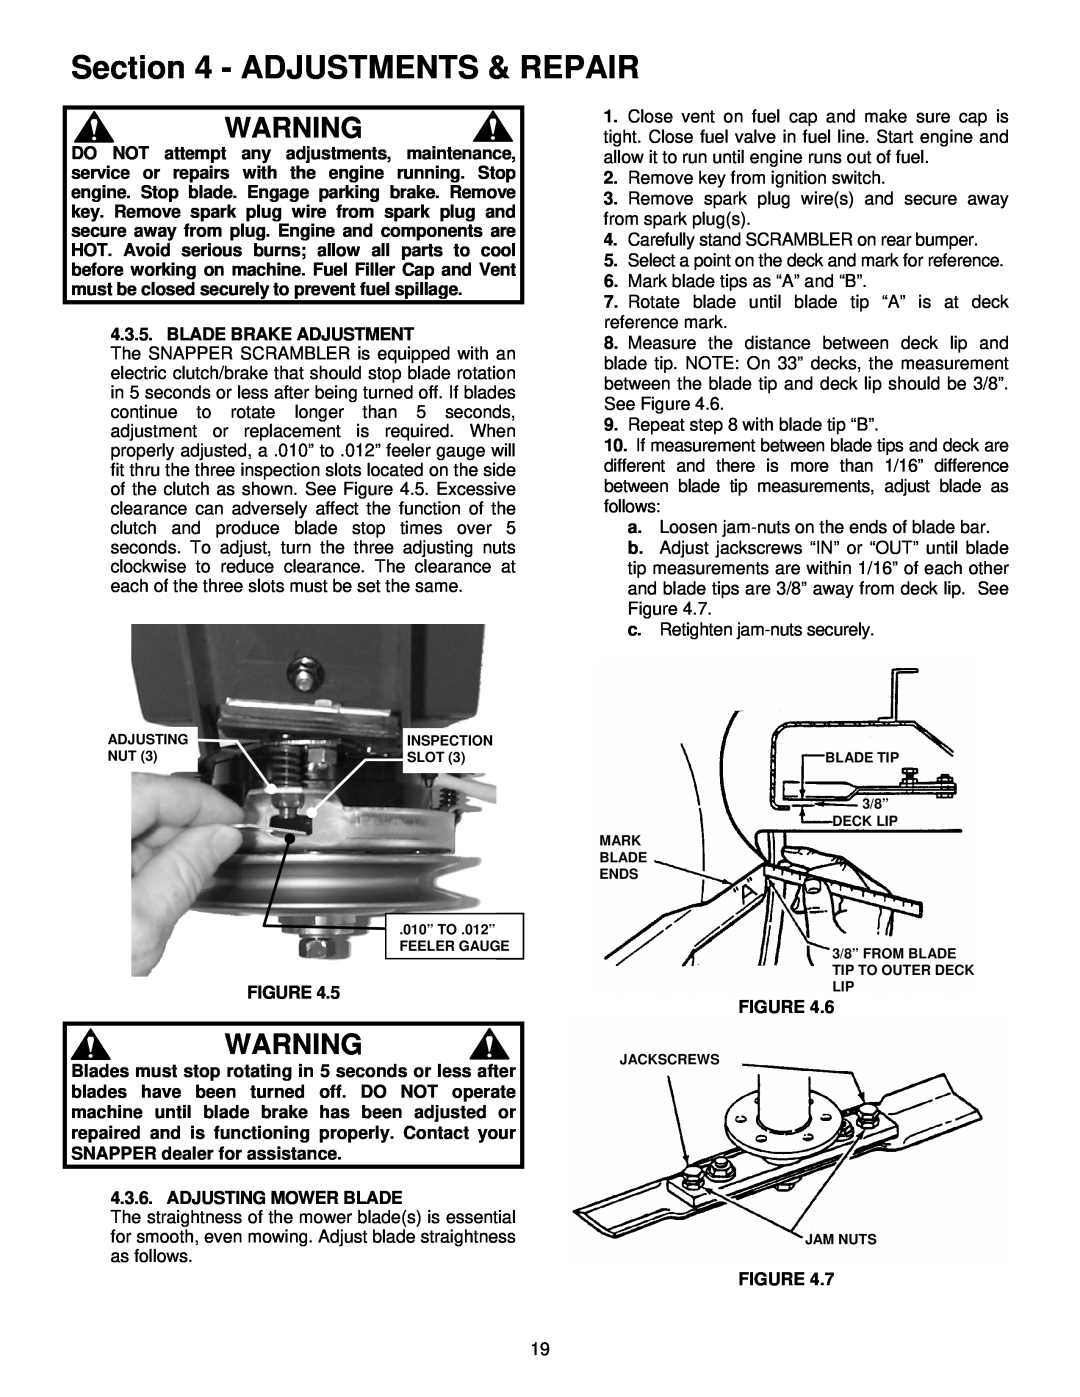 Snapper EYZ16335BVE important safety instructions Adjustments & Repair, Blade Brake Adjustment, Adjusting Mower Blade 